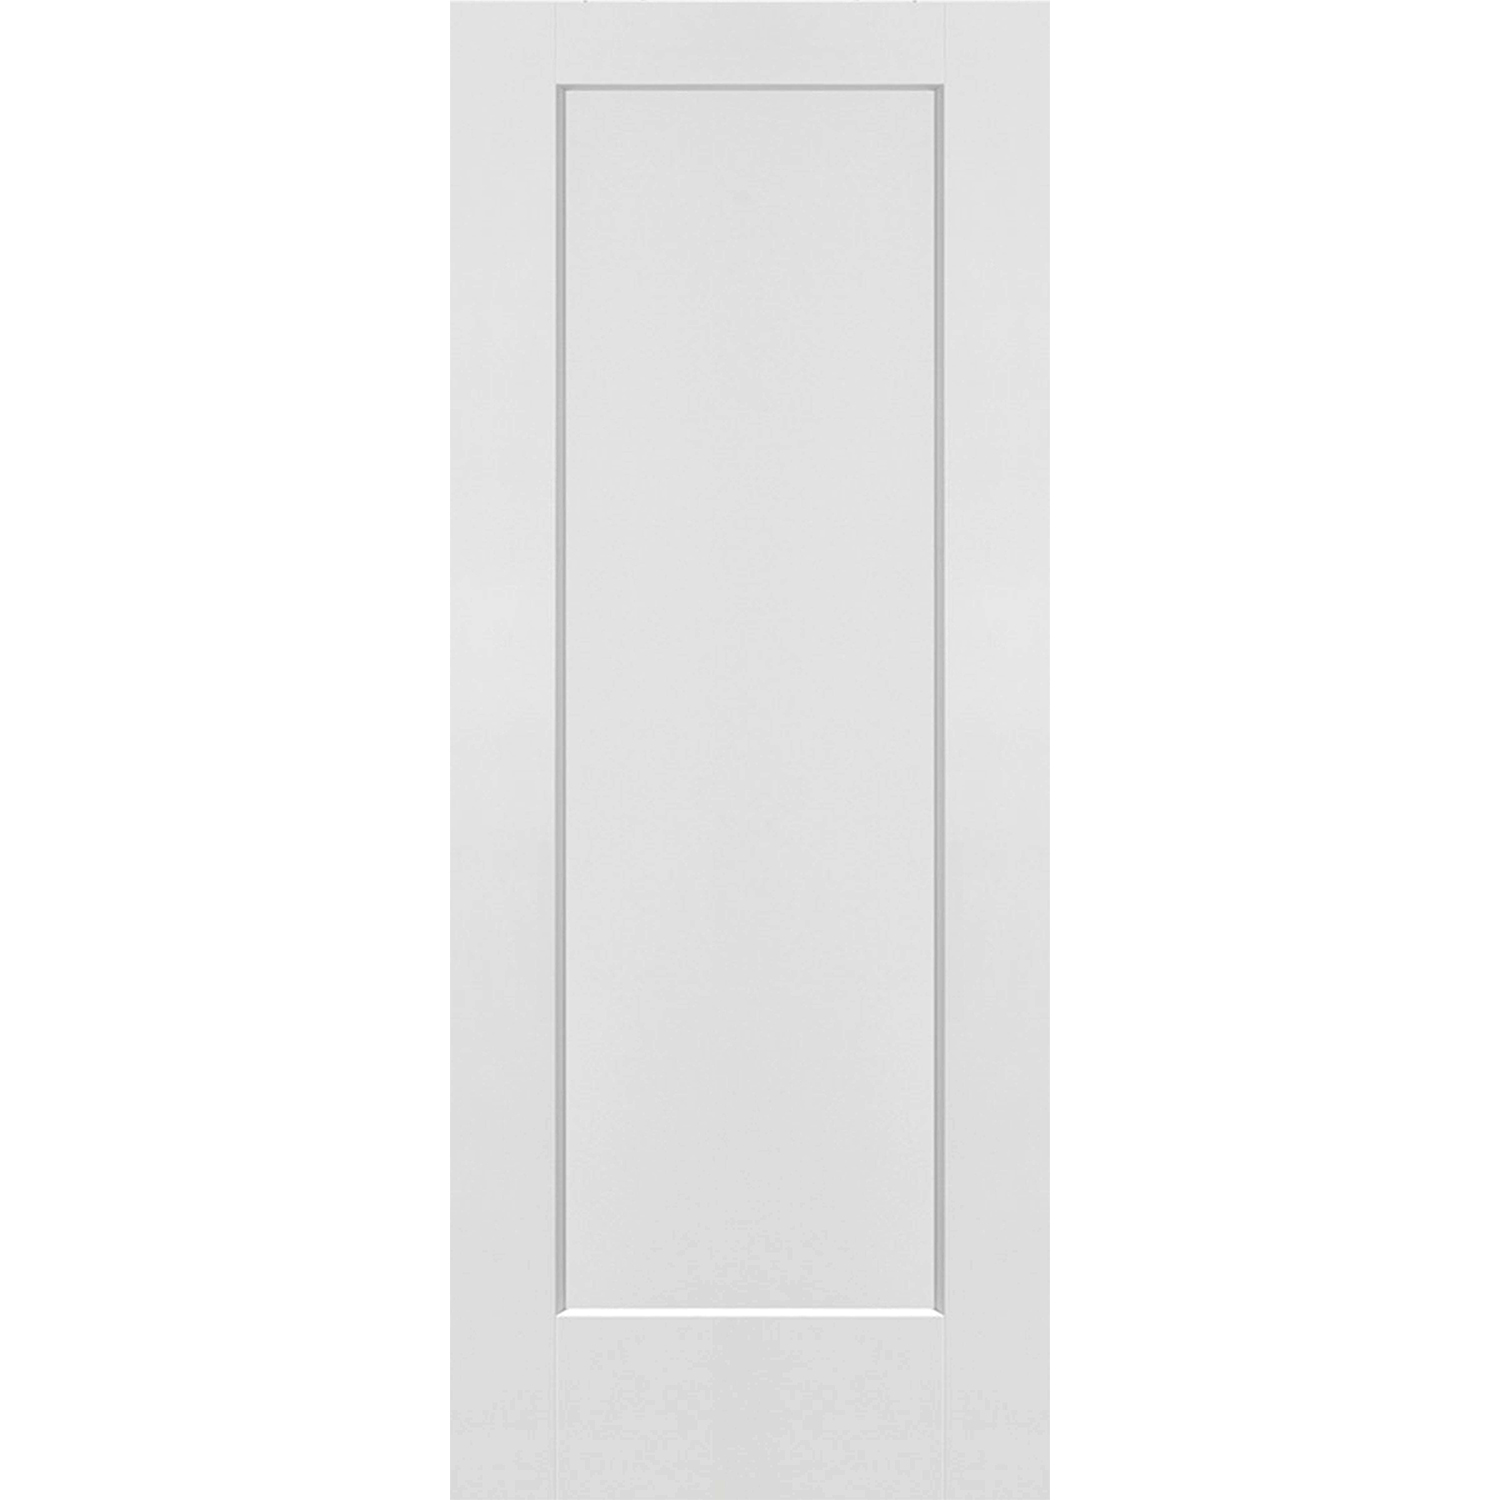 1 Panel Solid Door - 32 x 80